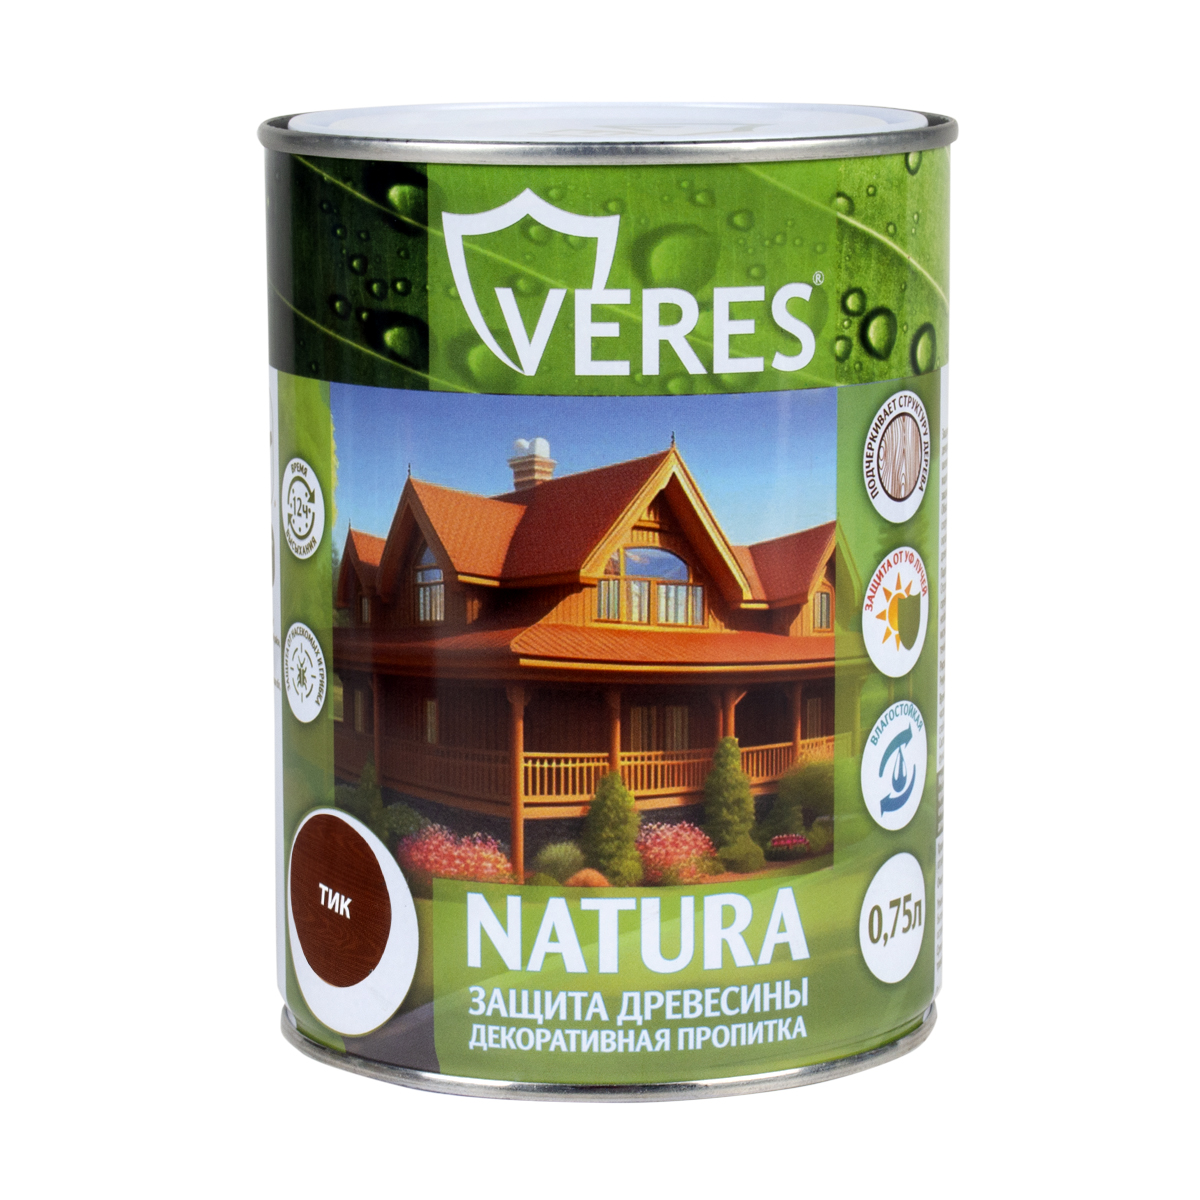 Декоративная пропитка для дерева Veres Natura полуматовая 0 75 л тик, VR-128